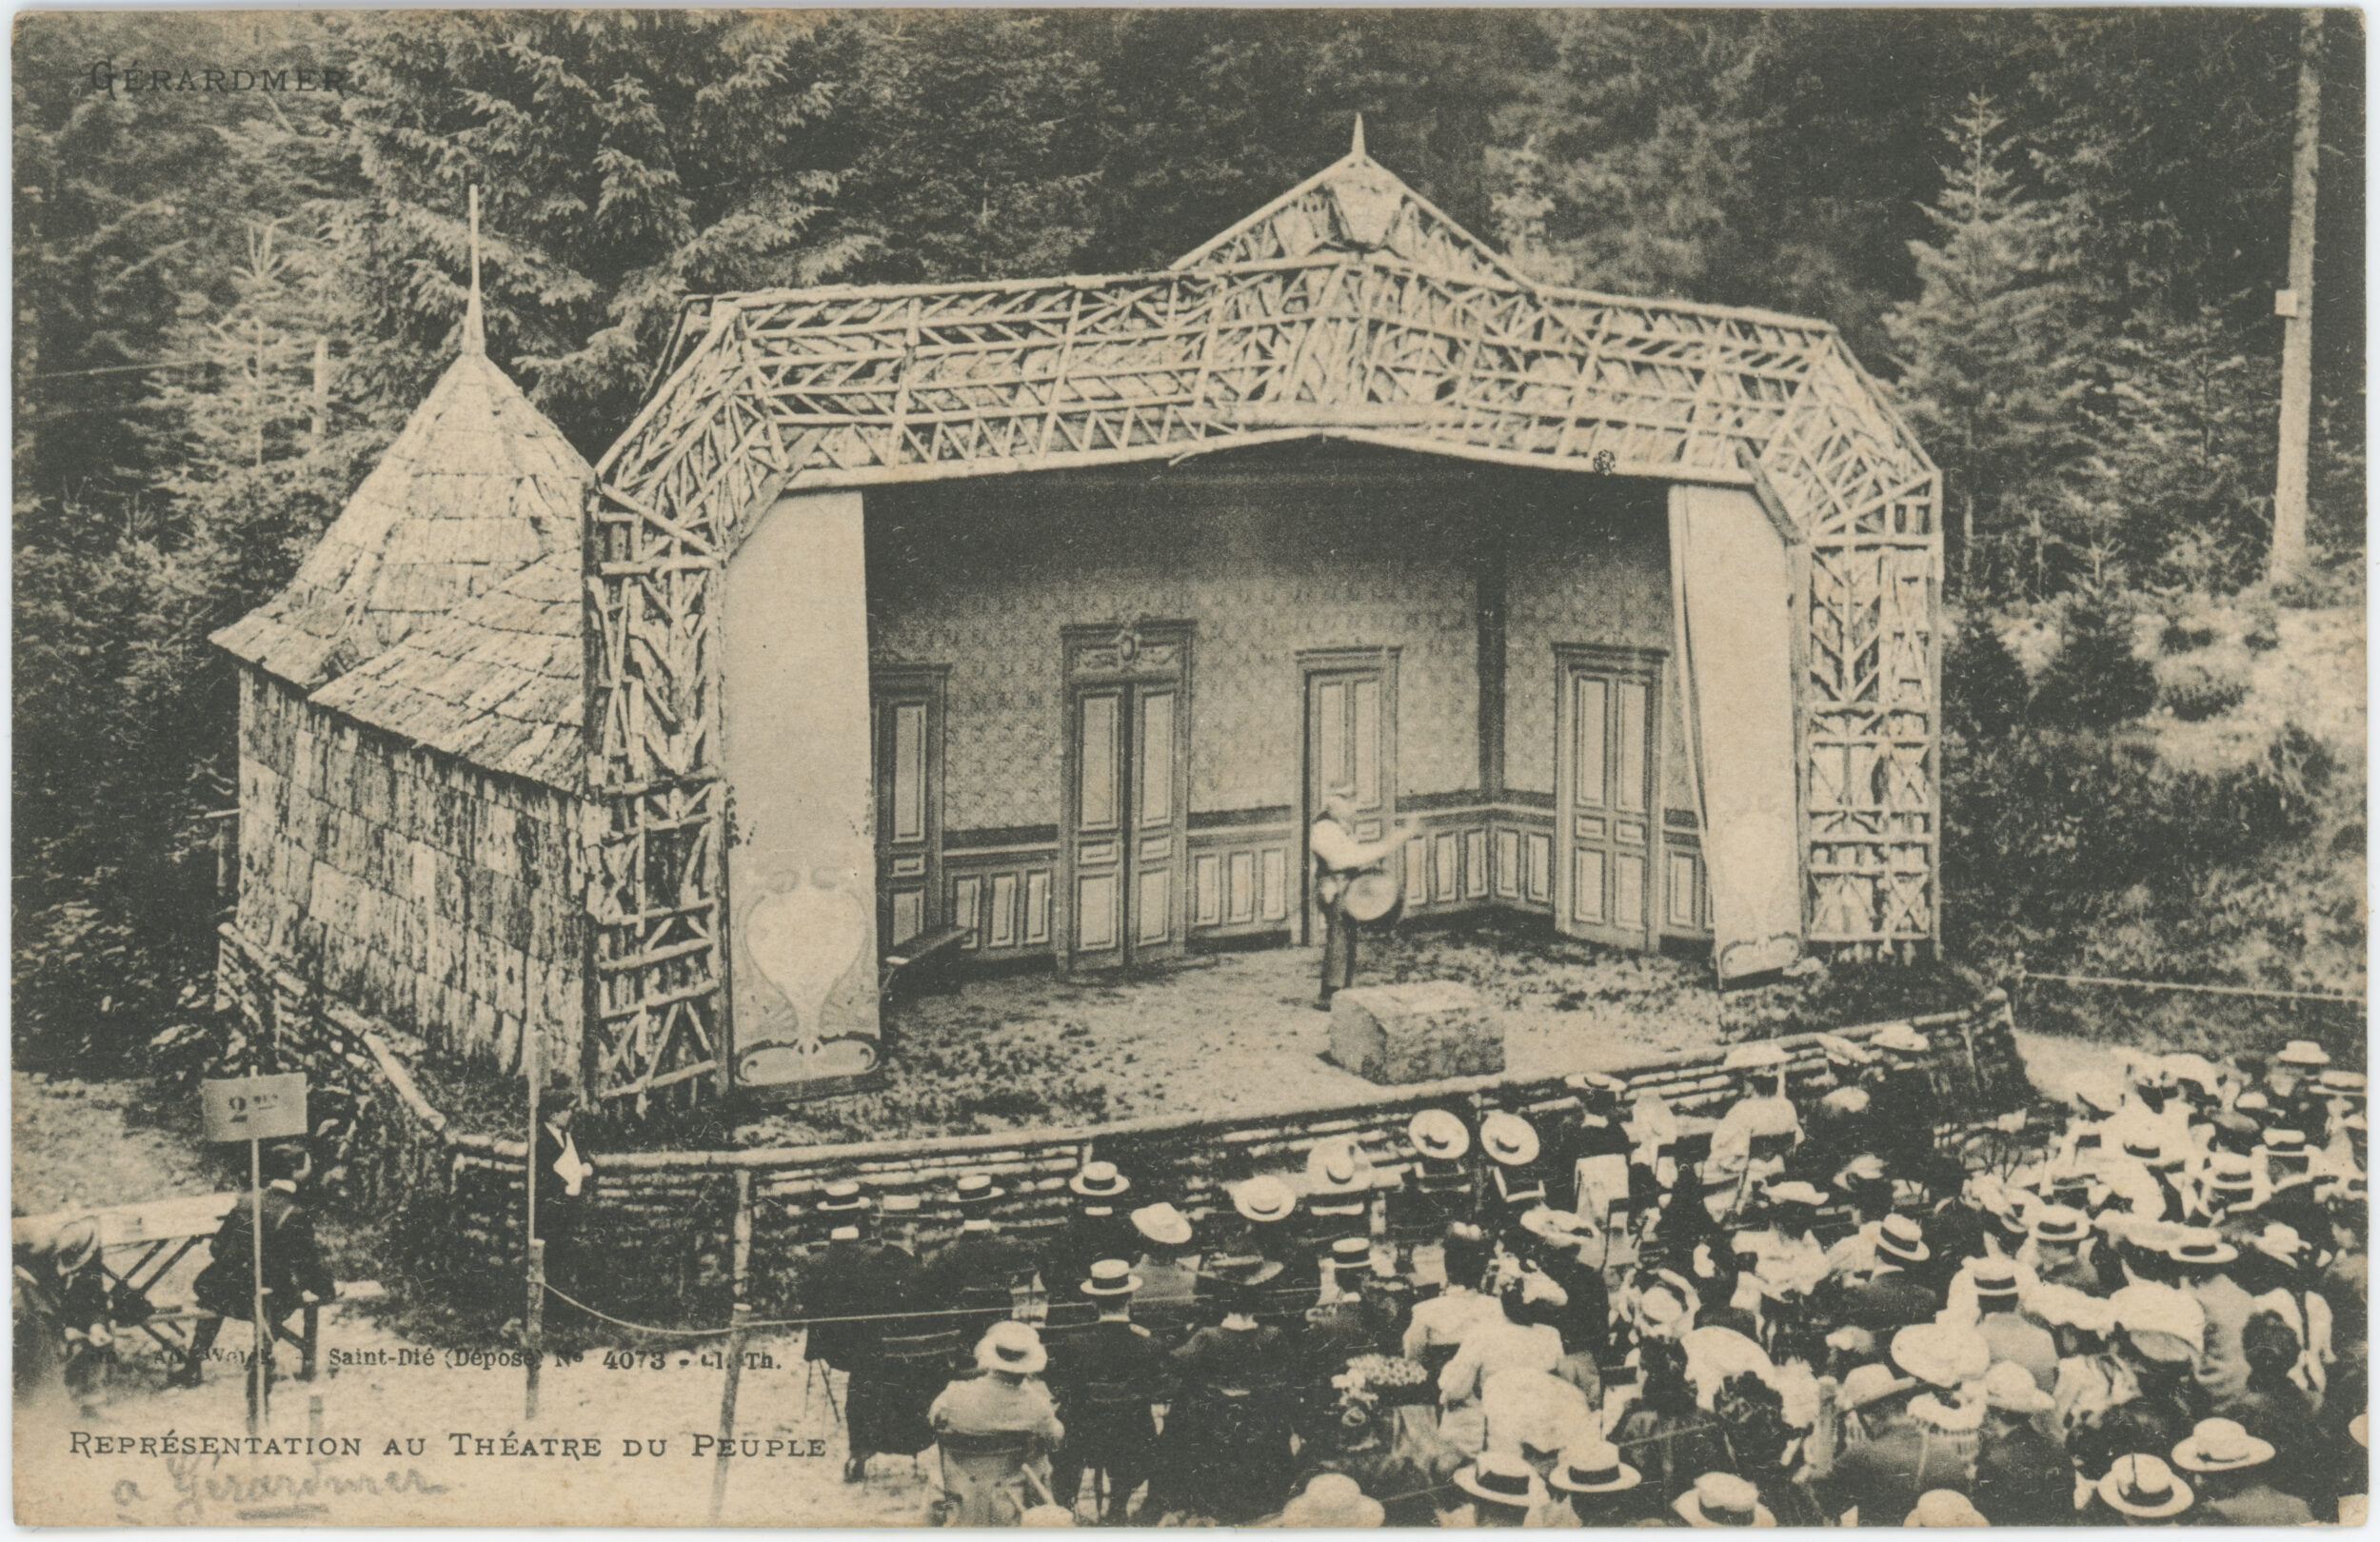 « Gérardmer / Représentation au Théâtre du Peuple ». Carte postale illustrée éditée par Ad. Weick à Saint-Dié